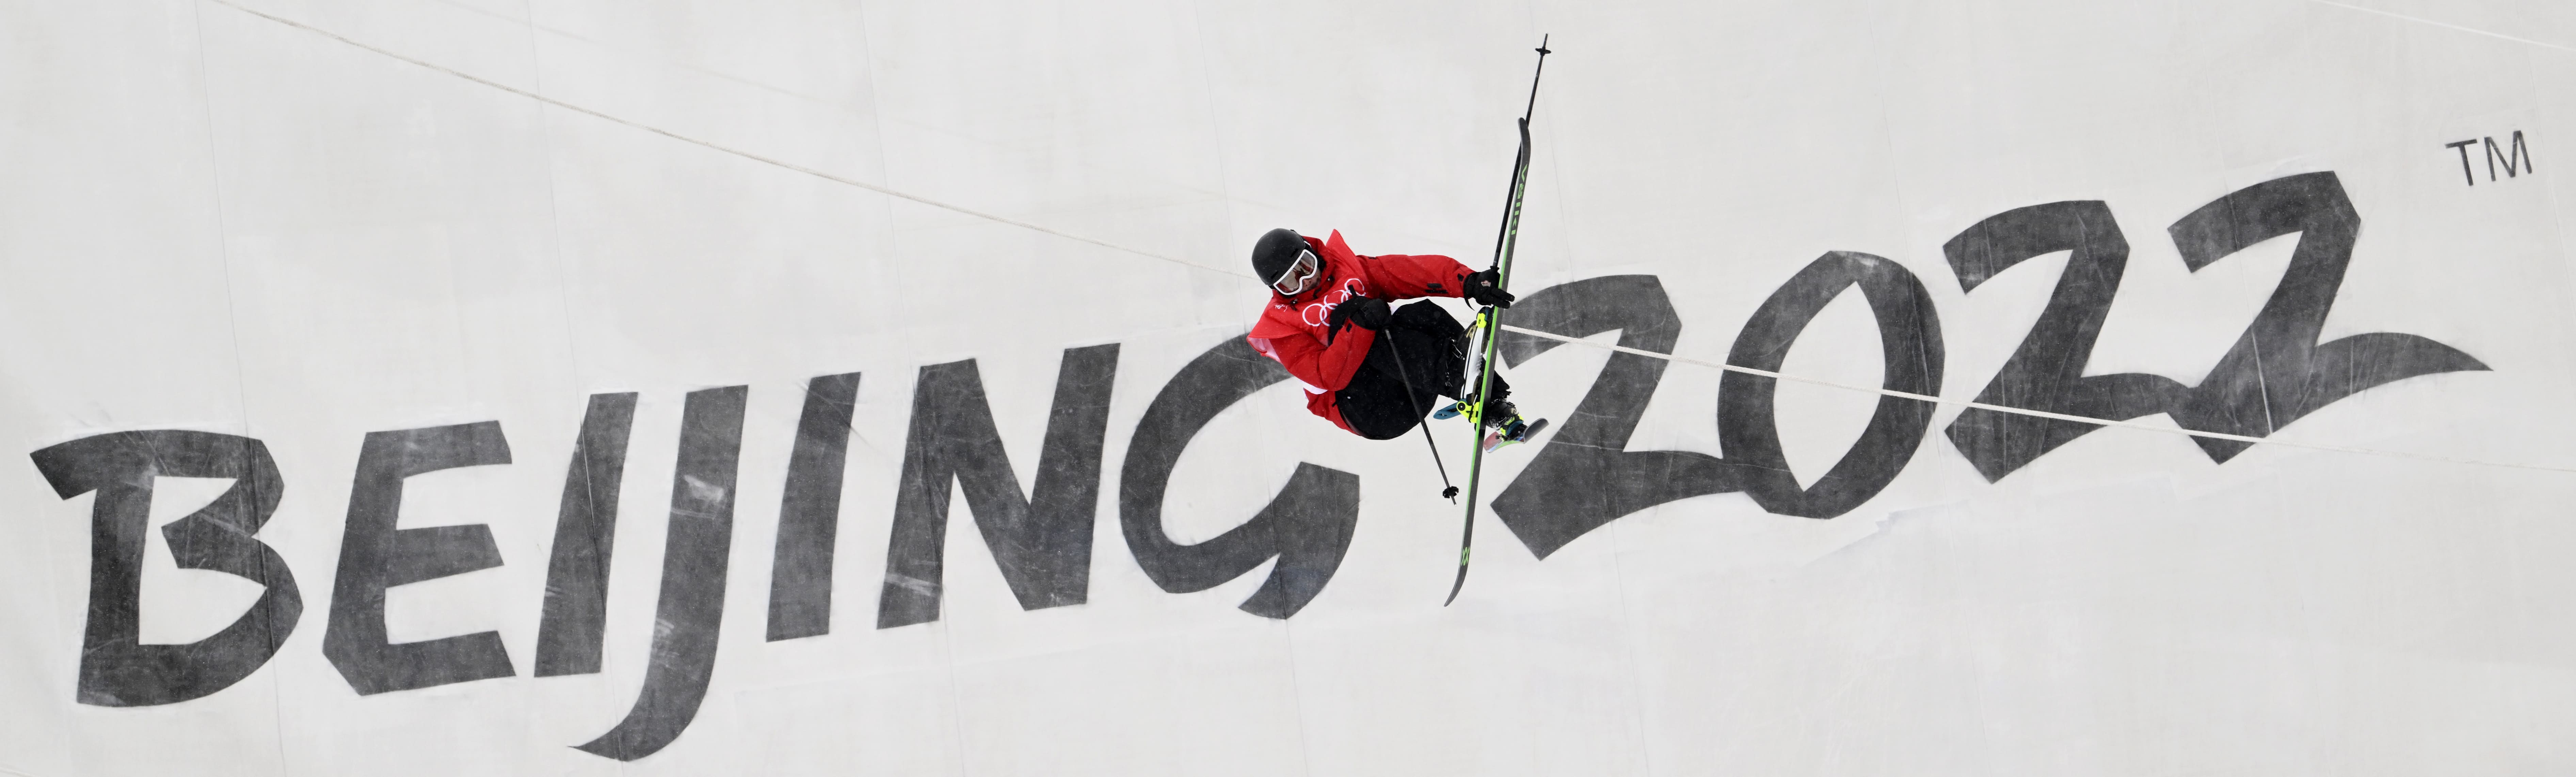 Kevin Rolland ski Half Pipe Pékin 2022